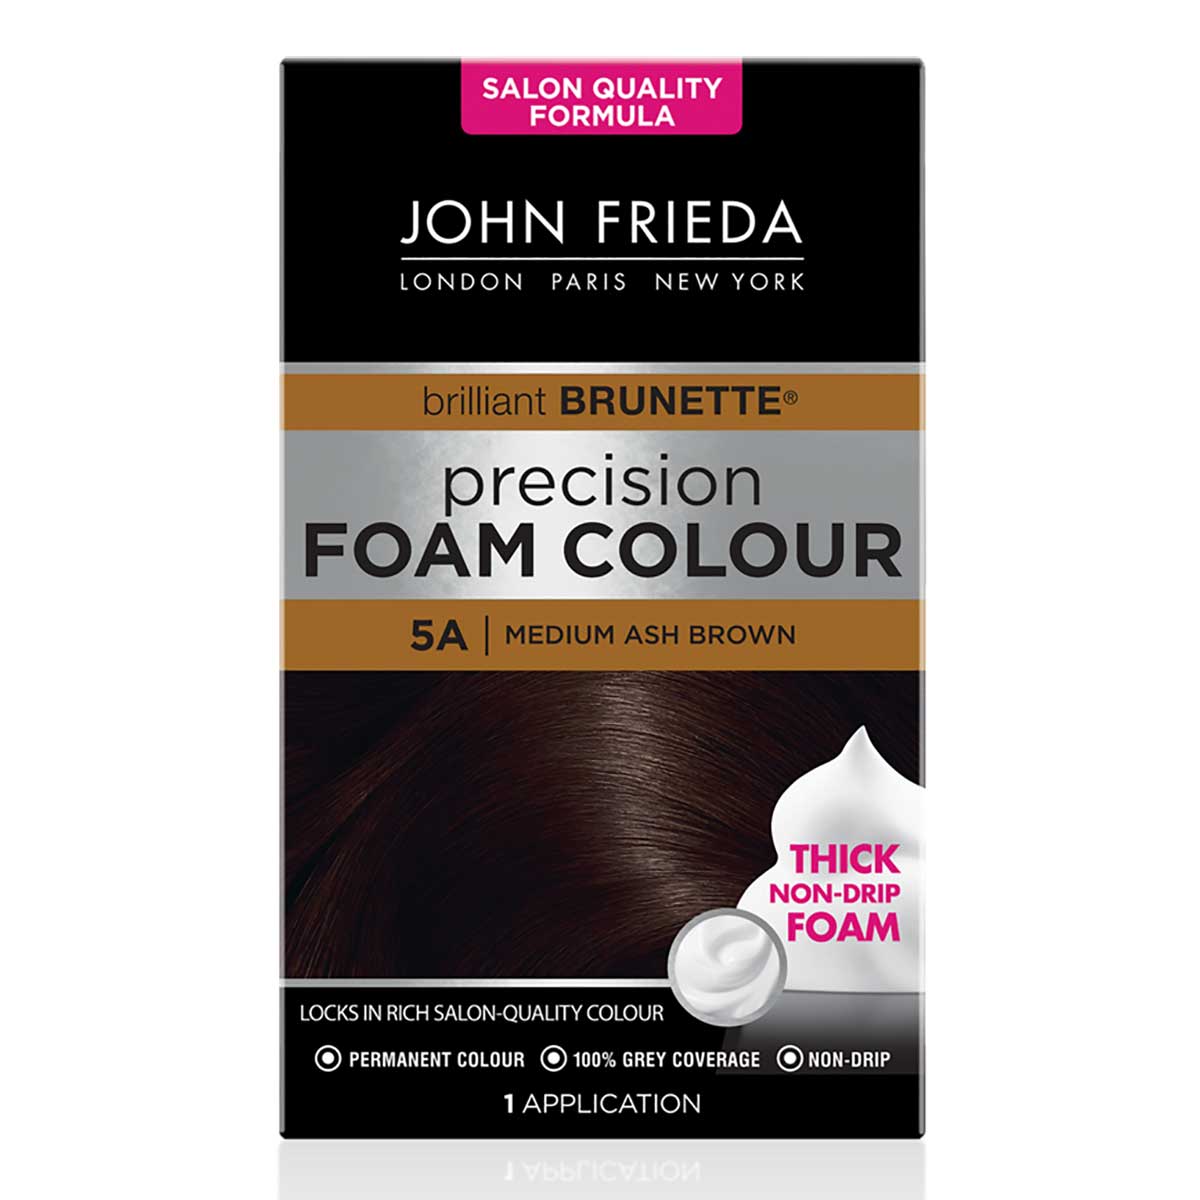 John Frieda Precision Foam Colour 5A Medium Ash Brown